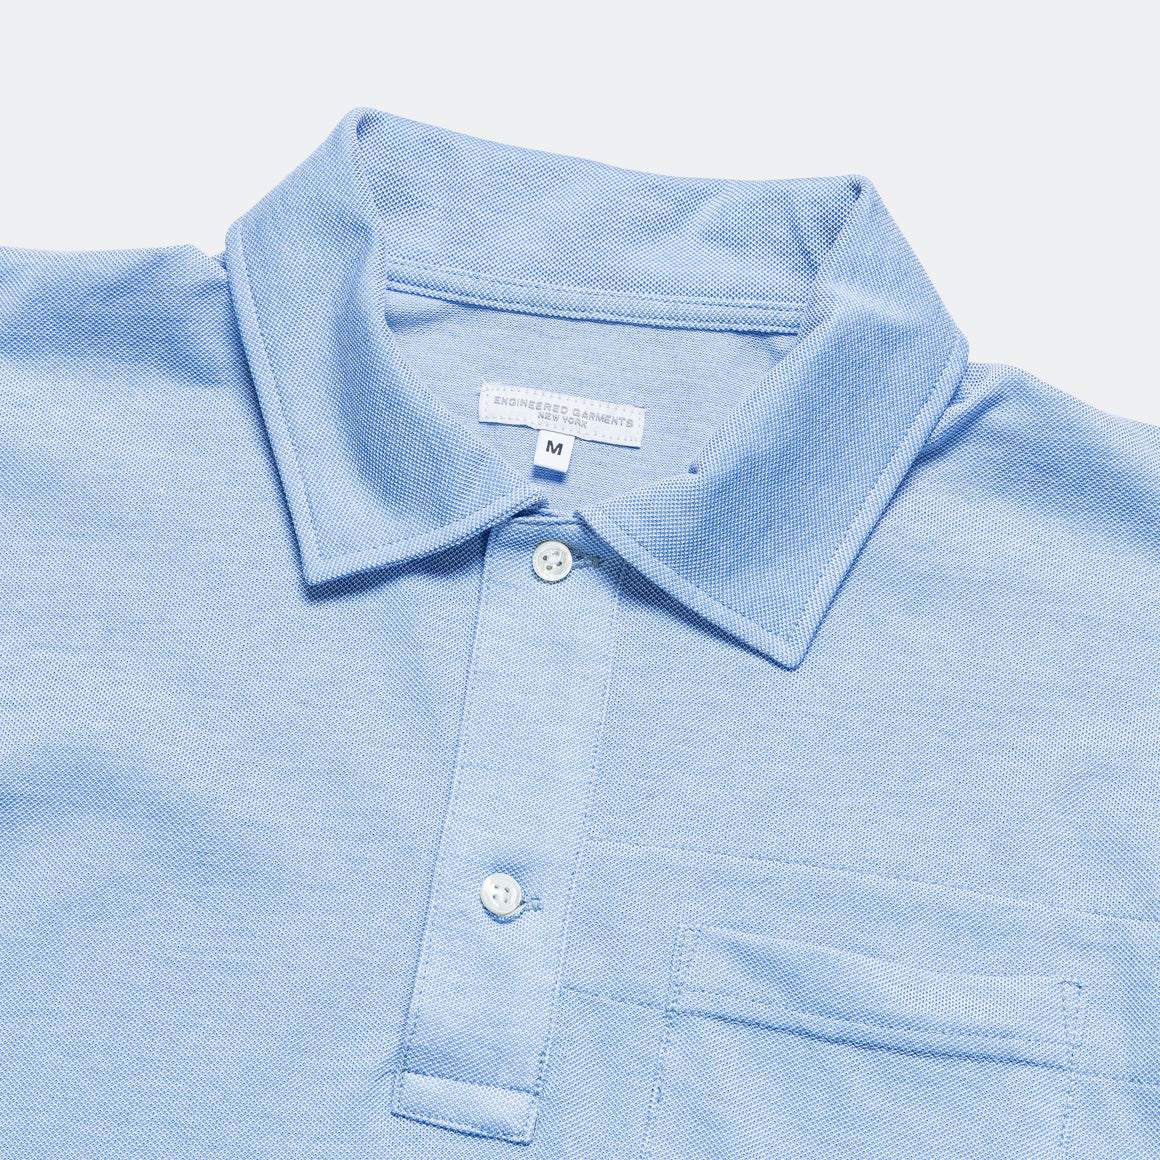 Polo Shirt Combo - Lt. Blue Cotton Pique